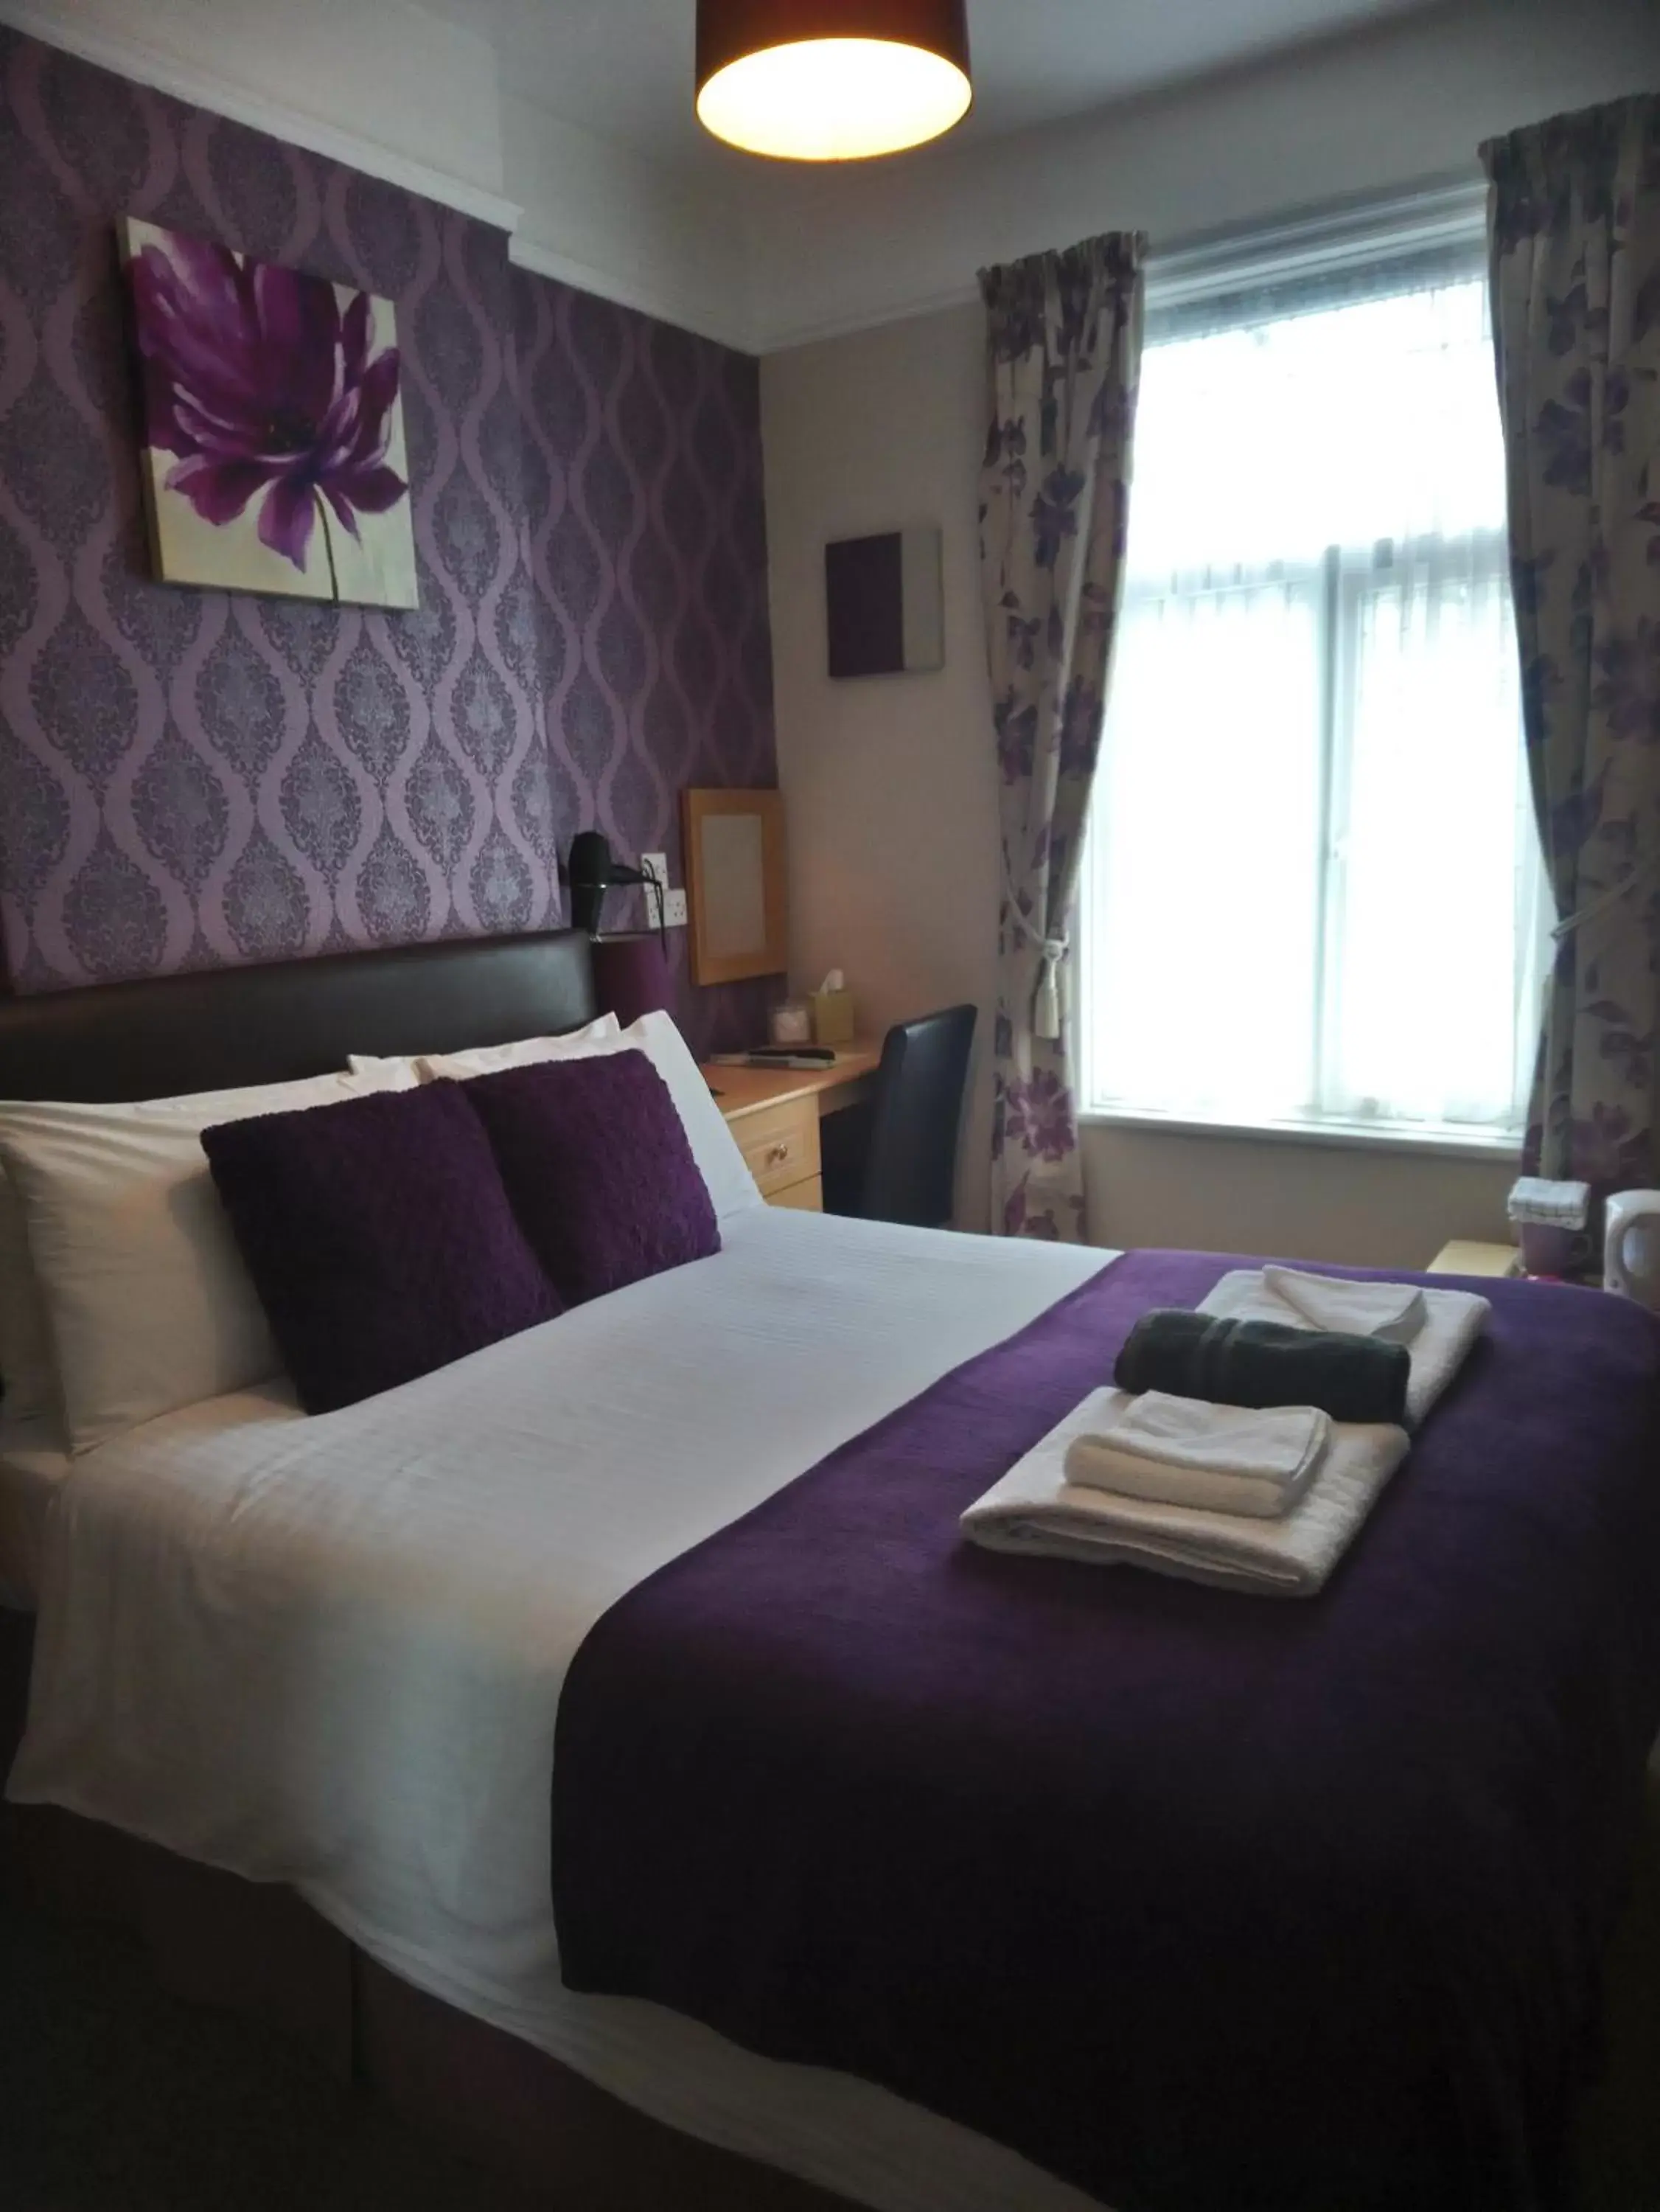 Bedroom, Bed in Cranmore Bed & Breakfast